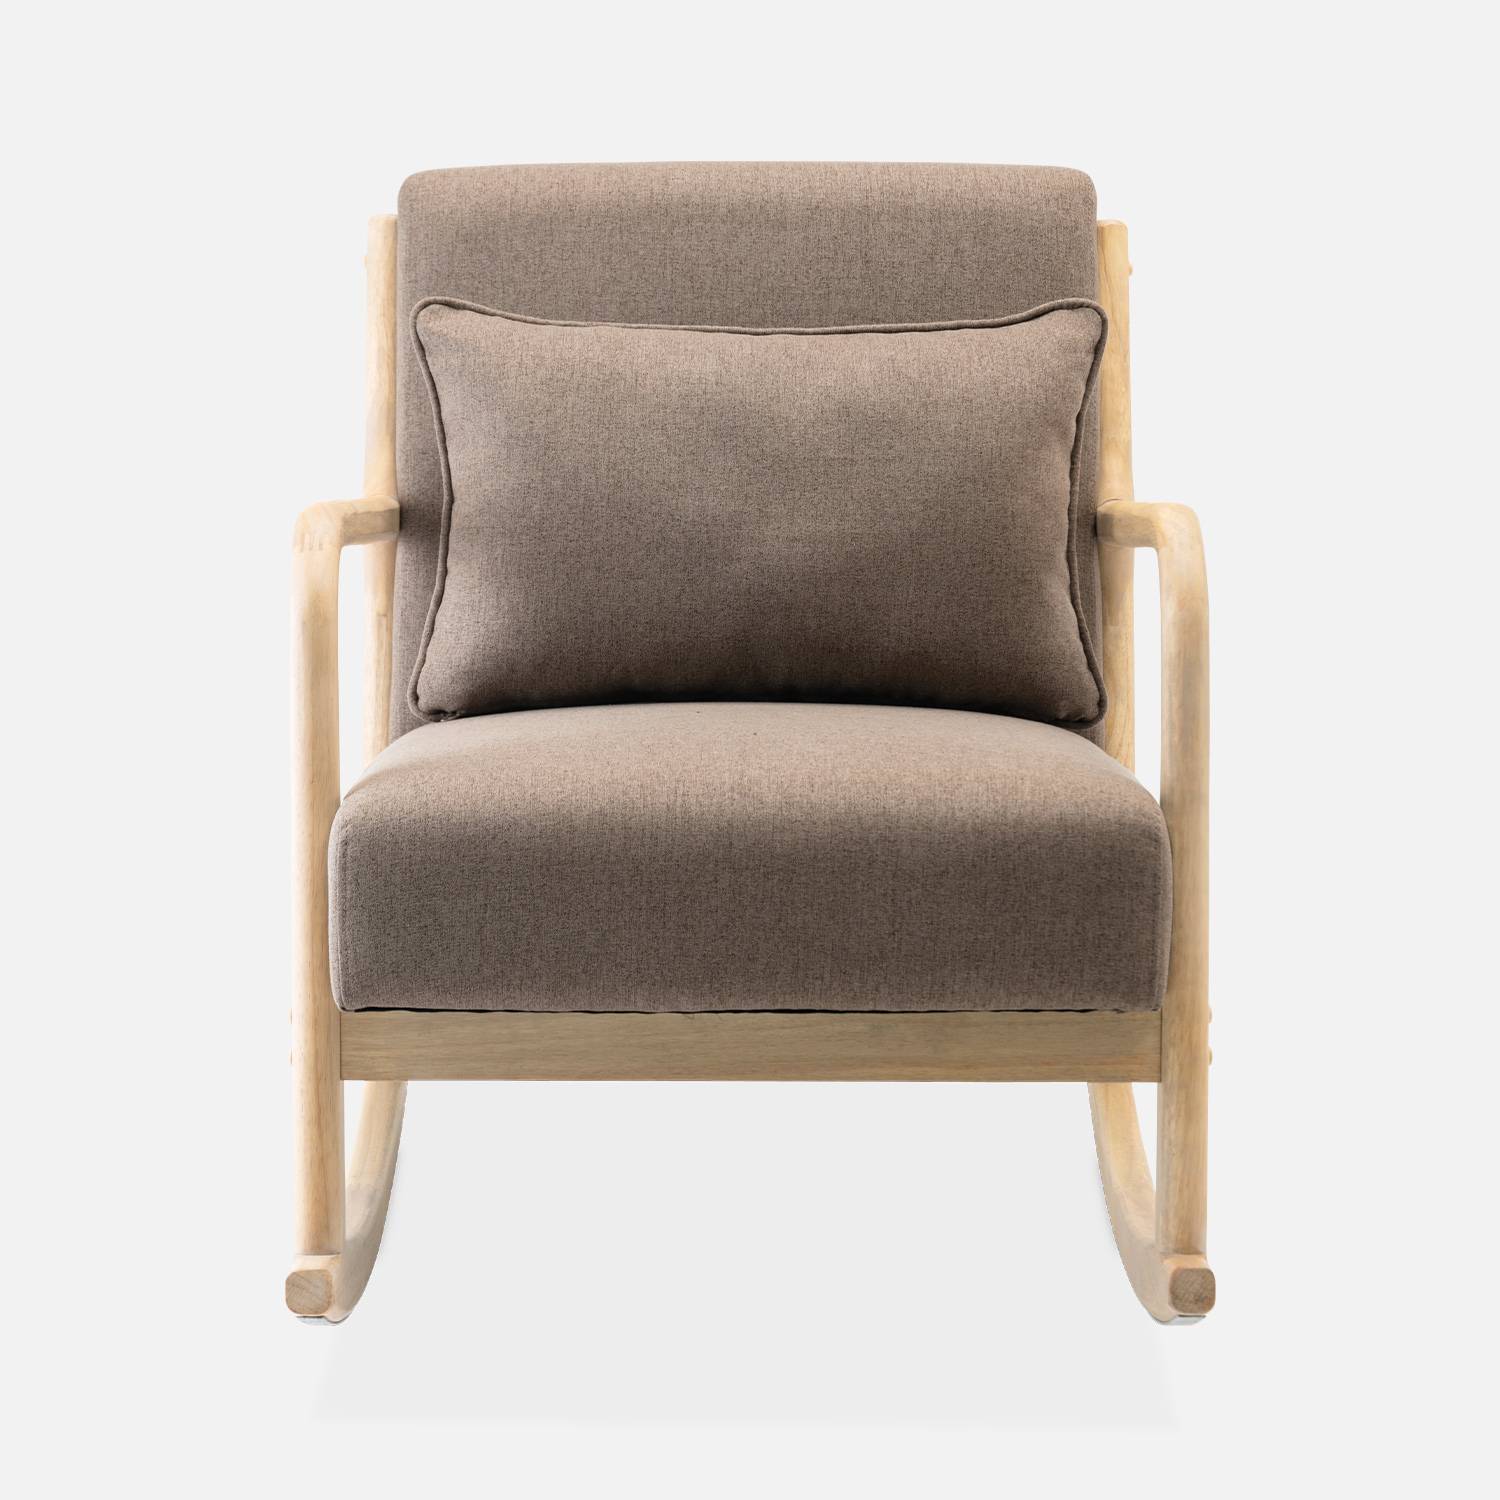 Cadeira de baloiço de design em madeira e tecido, 1 assento, cadeira de baloiço escandinava, marrom,sweeek,Photo4